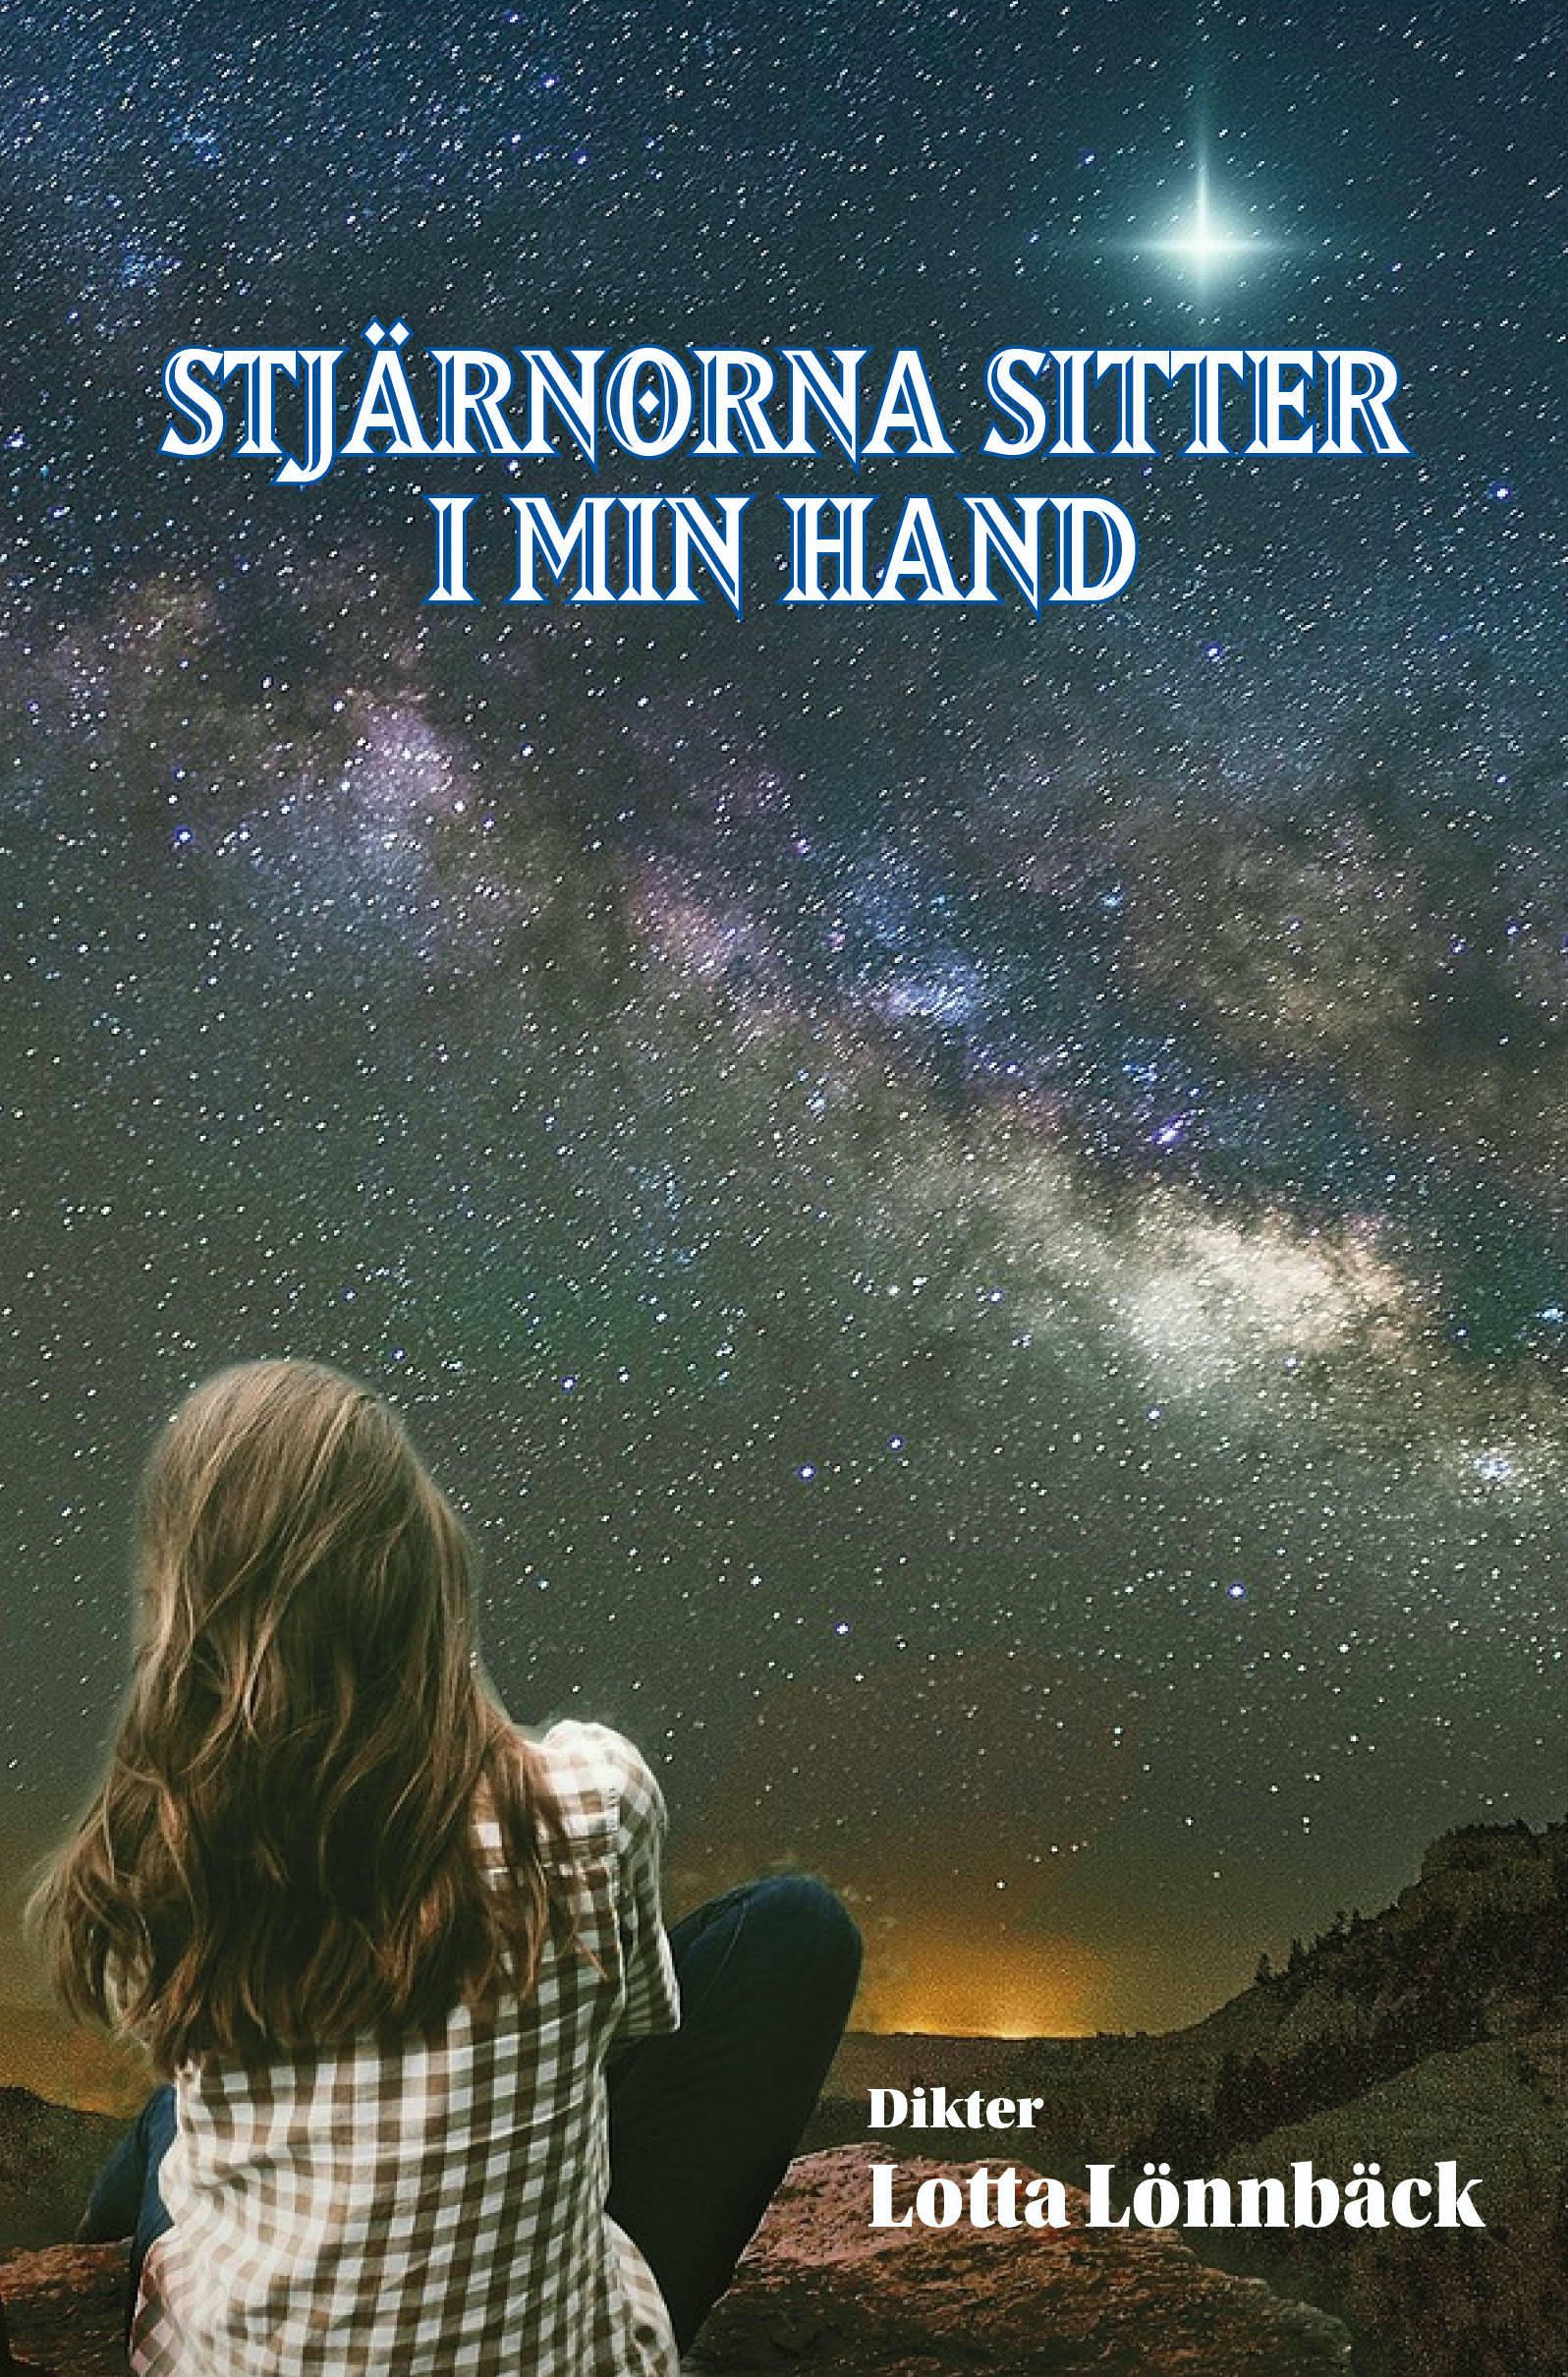 Stjärnorna sitter i min hand, e-bok av Lotta Lönnbäck